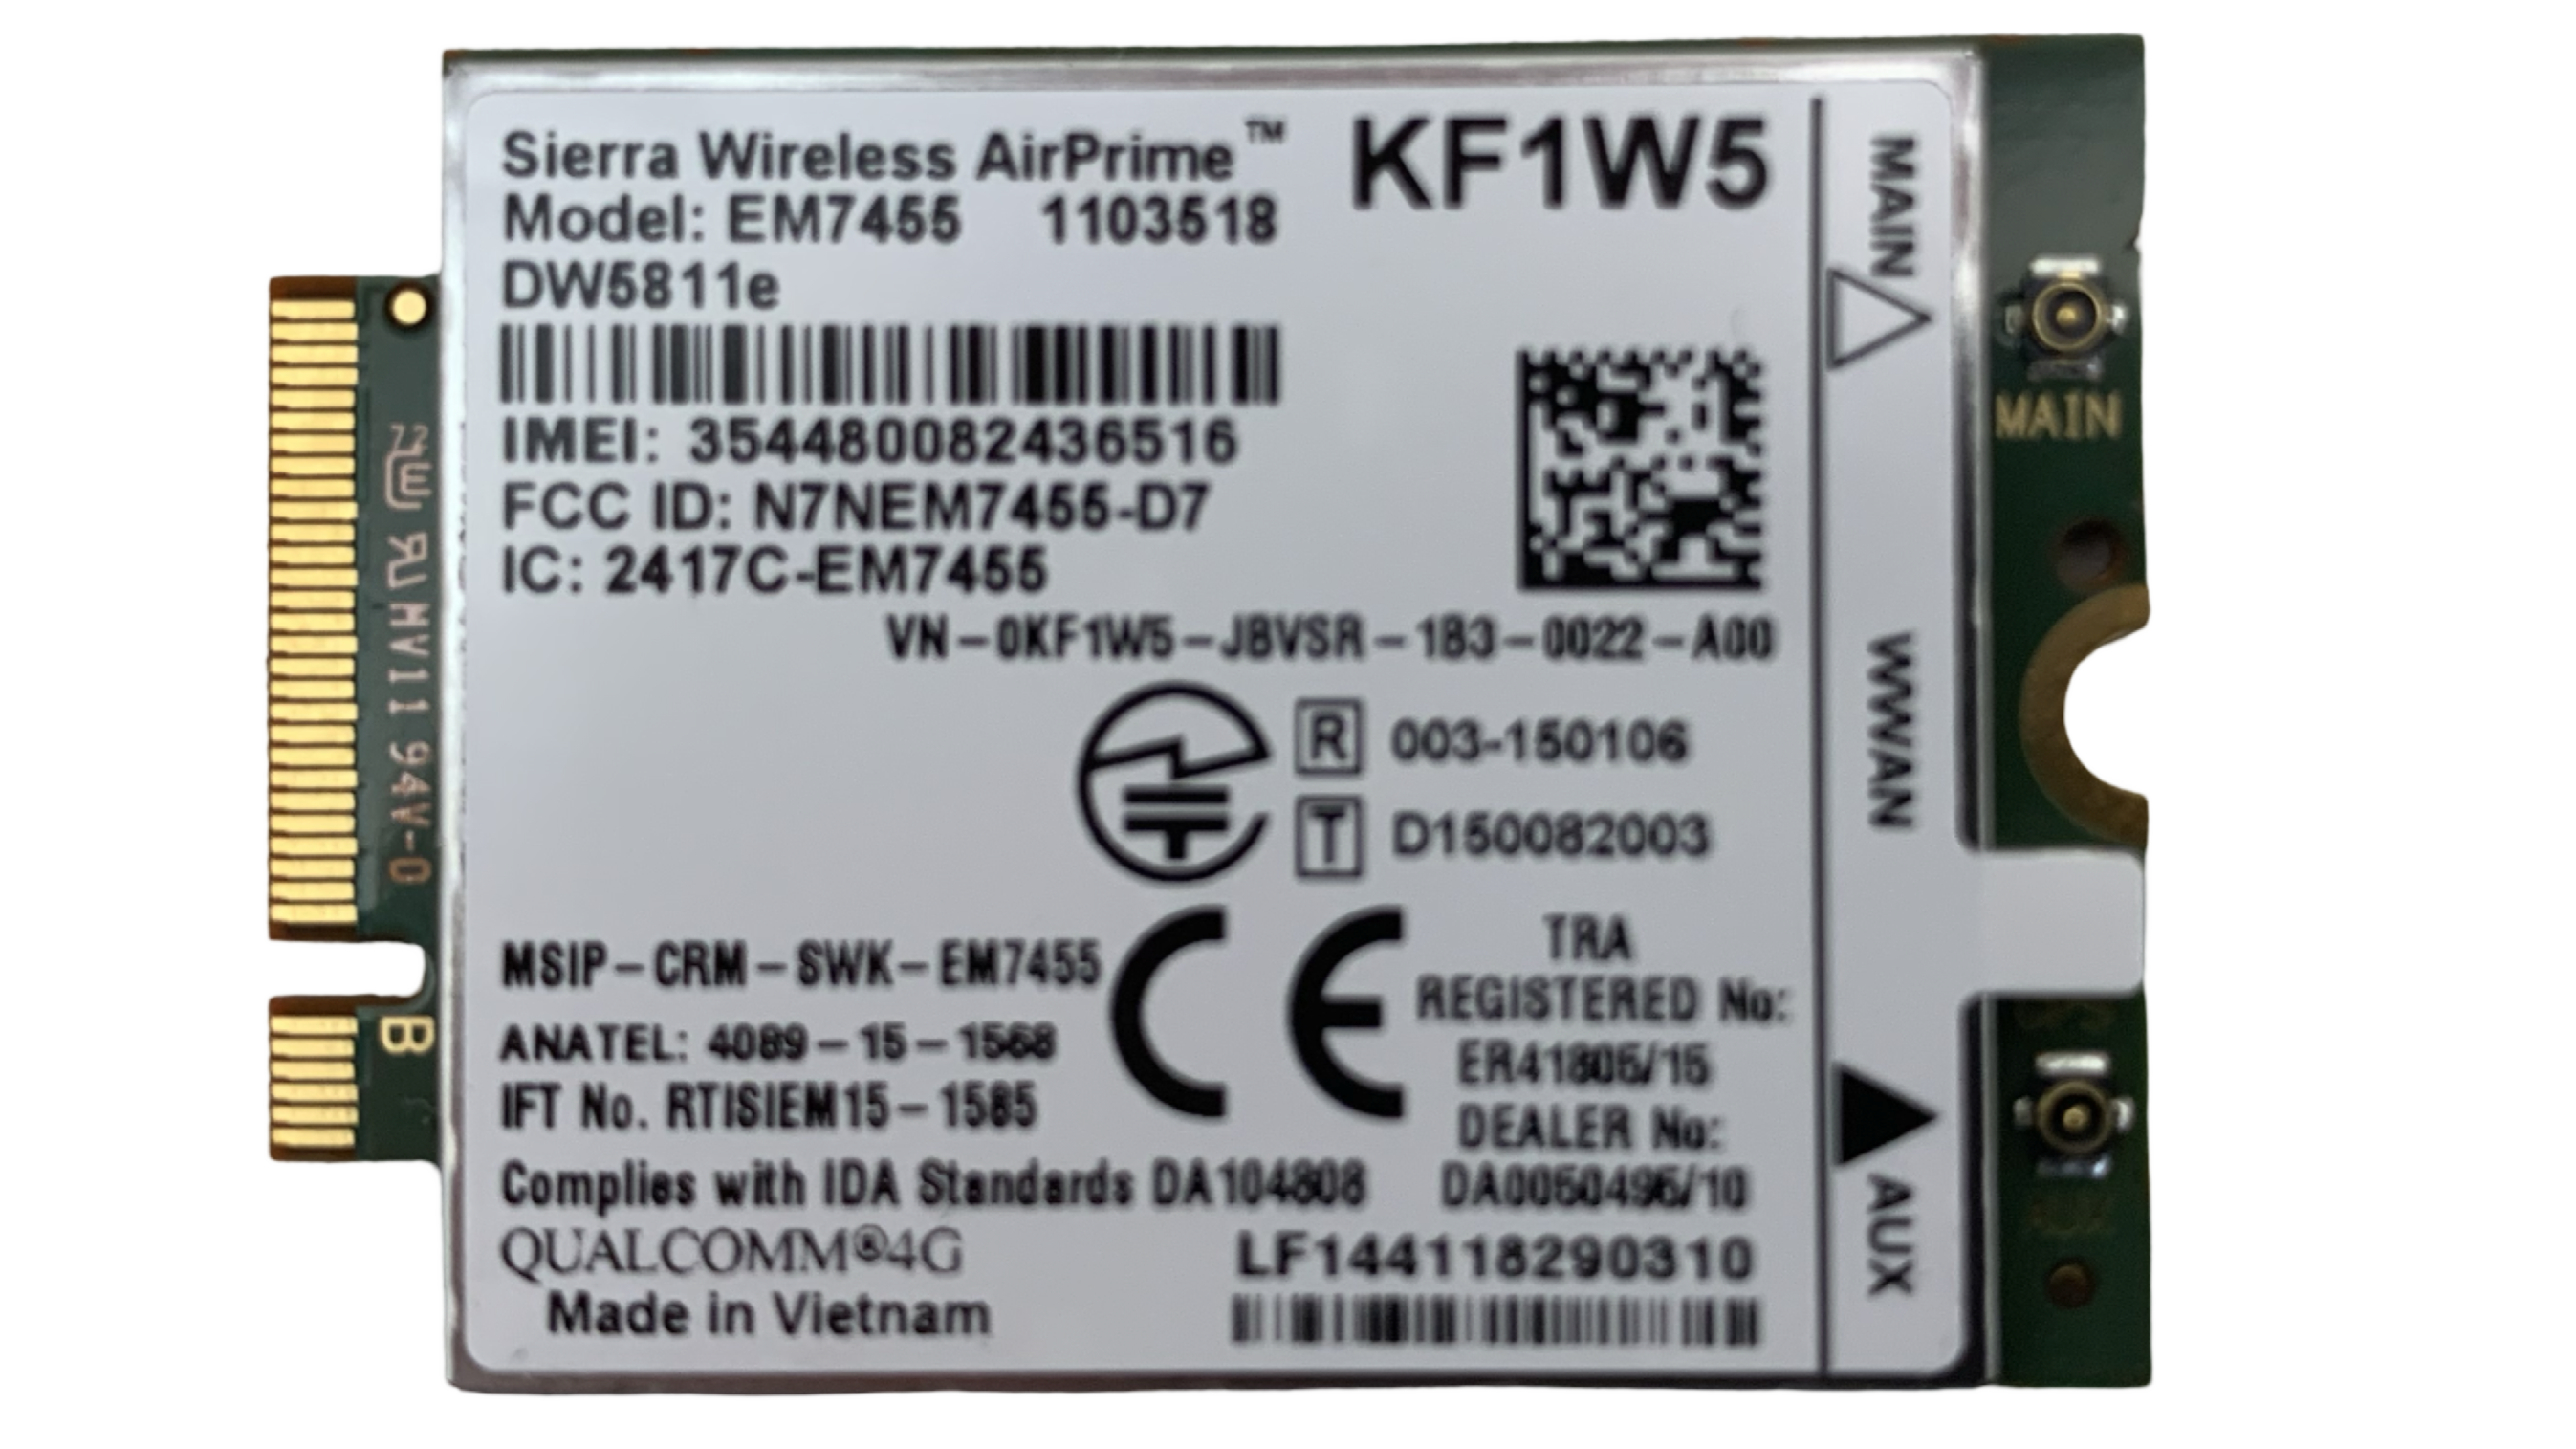  Modem WWAN 4G LTE Sierra Wireless AirPrime EM7455 DW5811e KF1W5